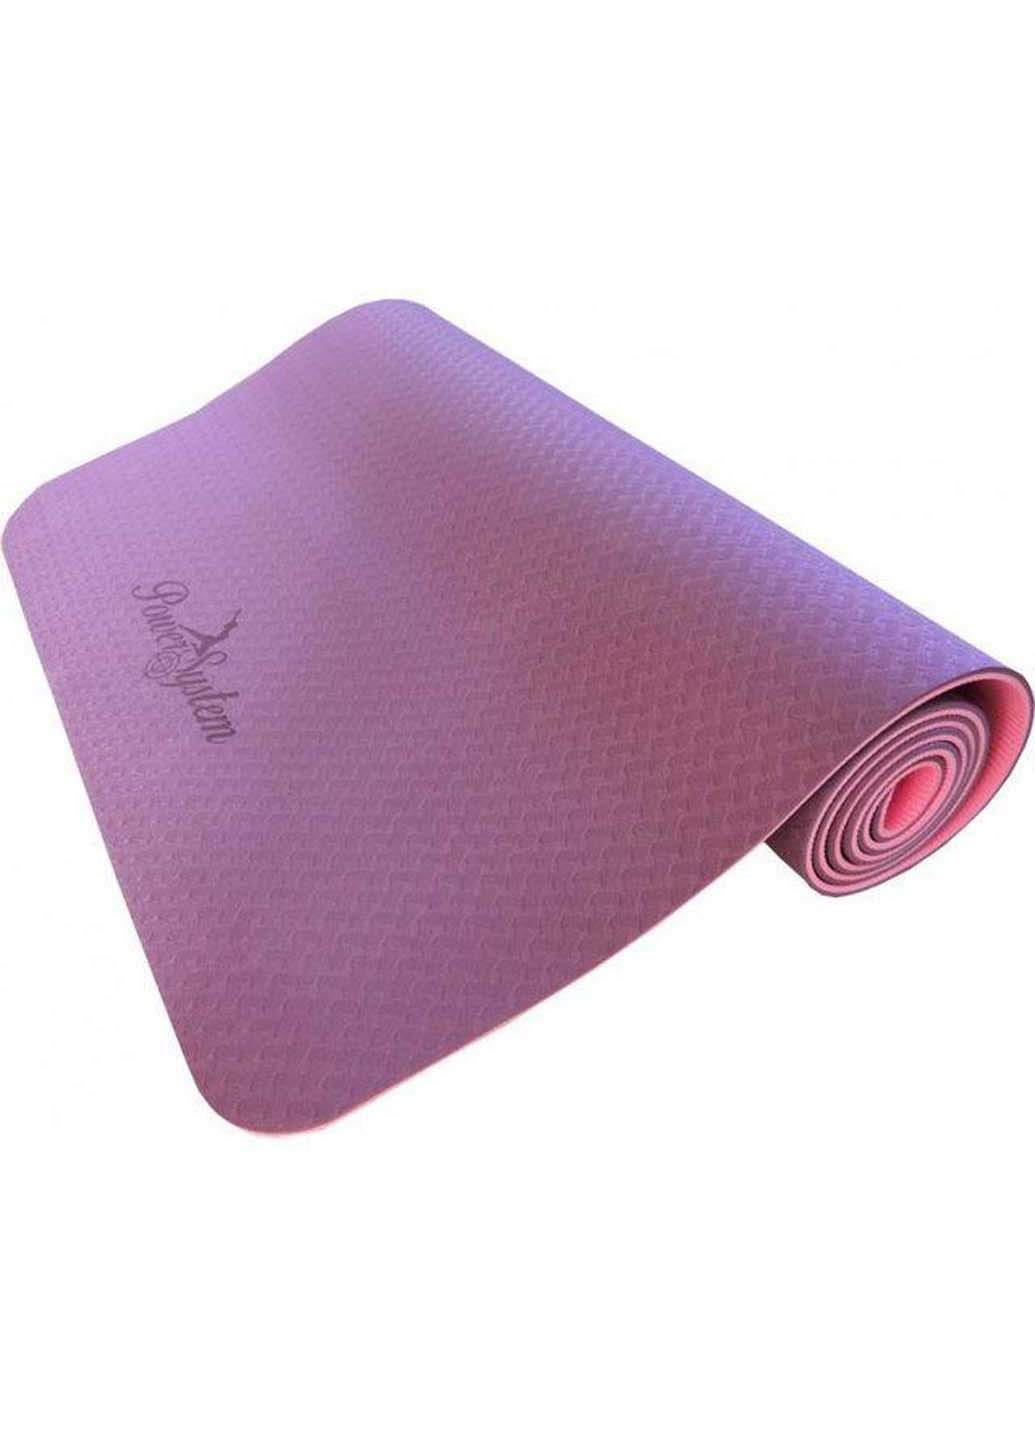 Коврик для йоги и фитнеса Yoga Mat Premium Power System (258347038)